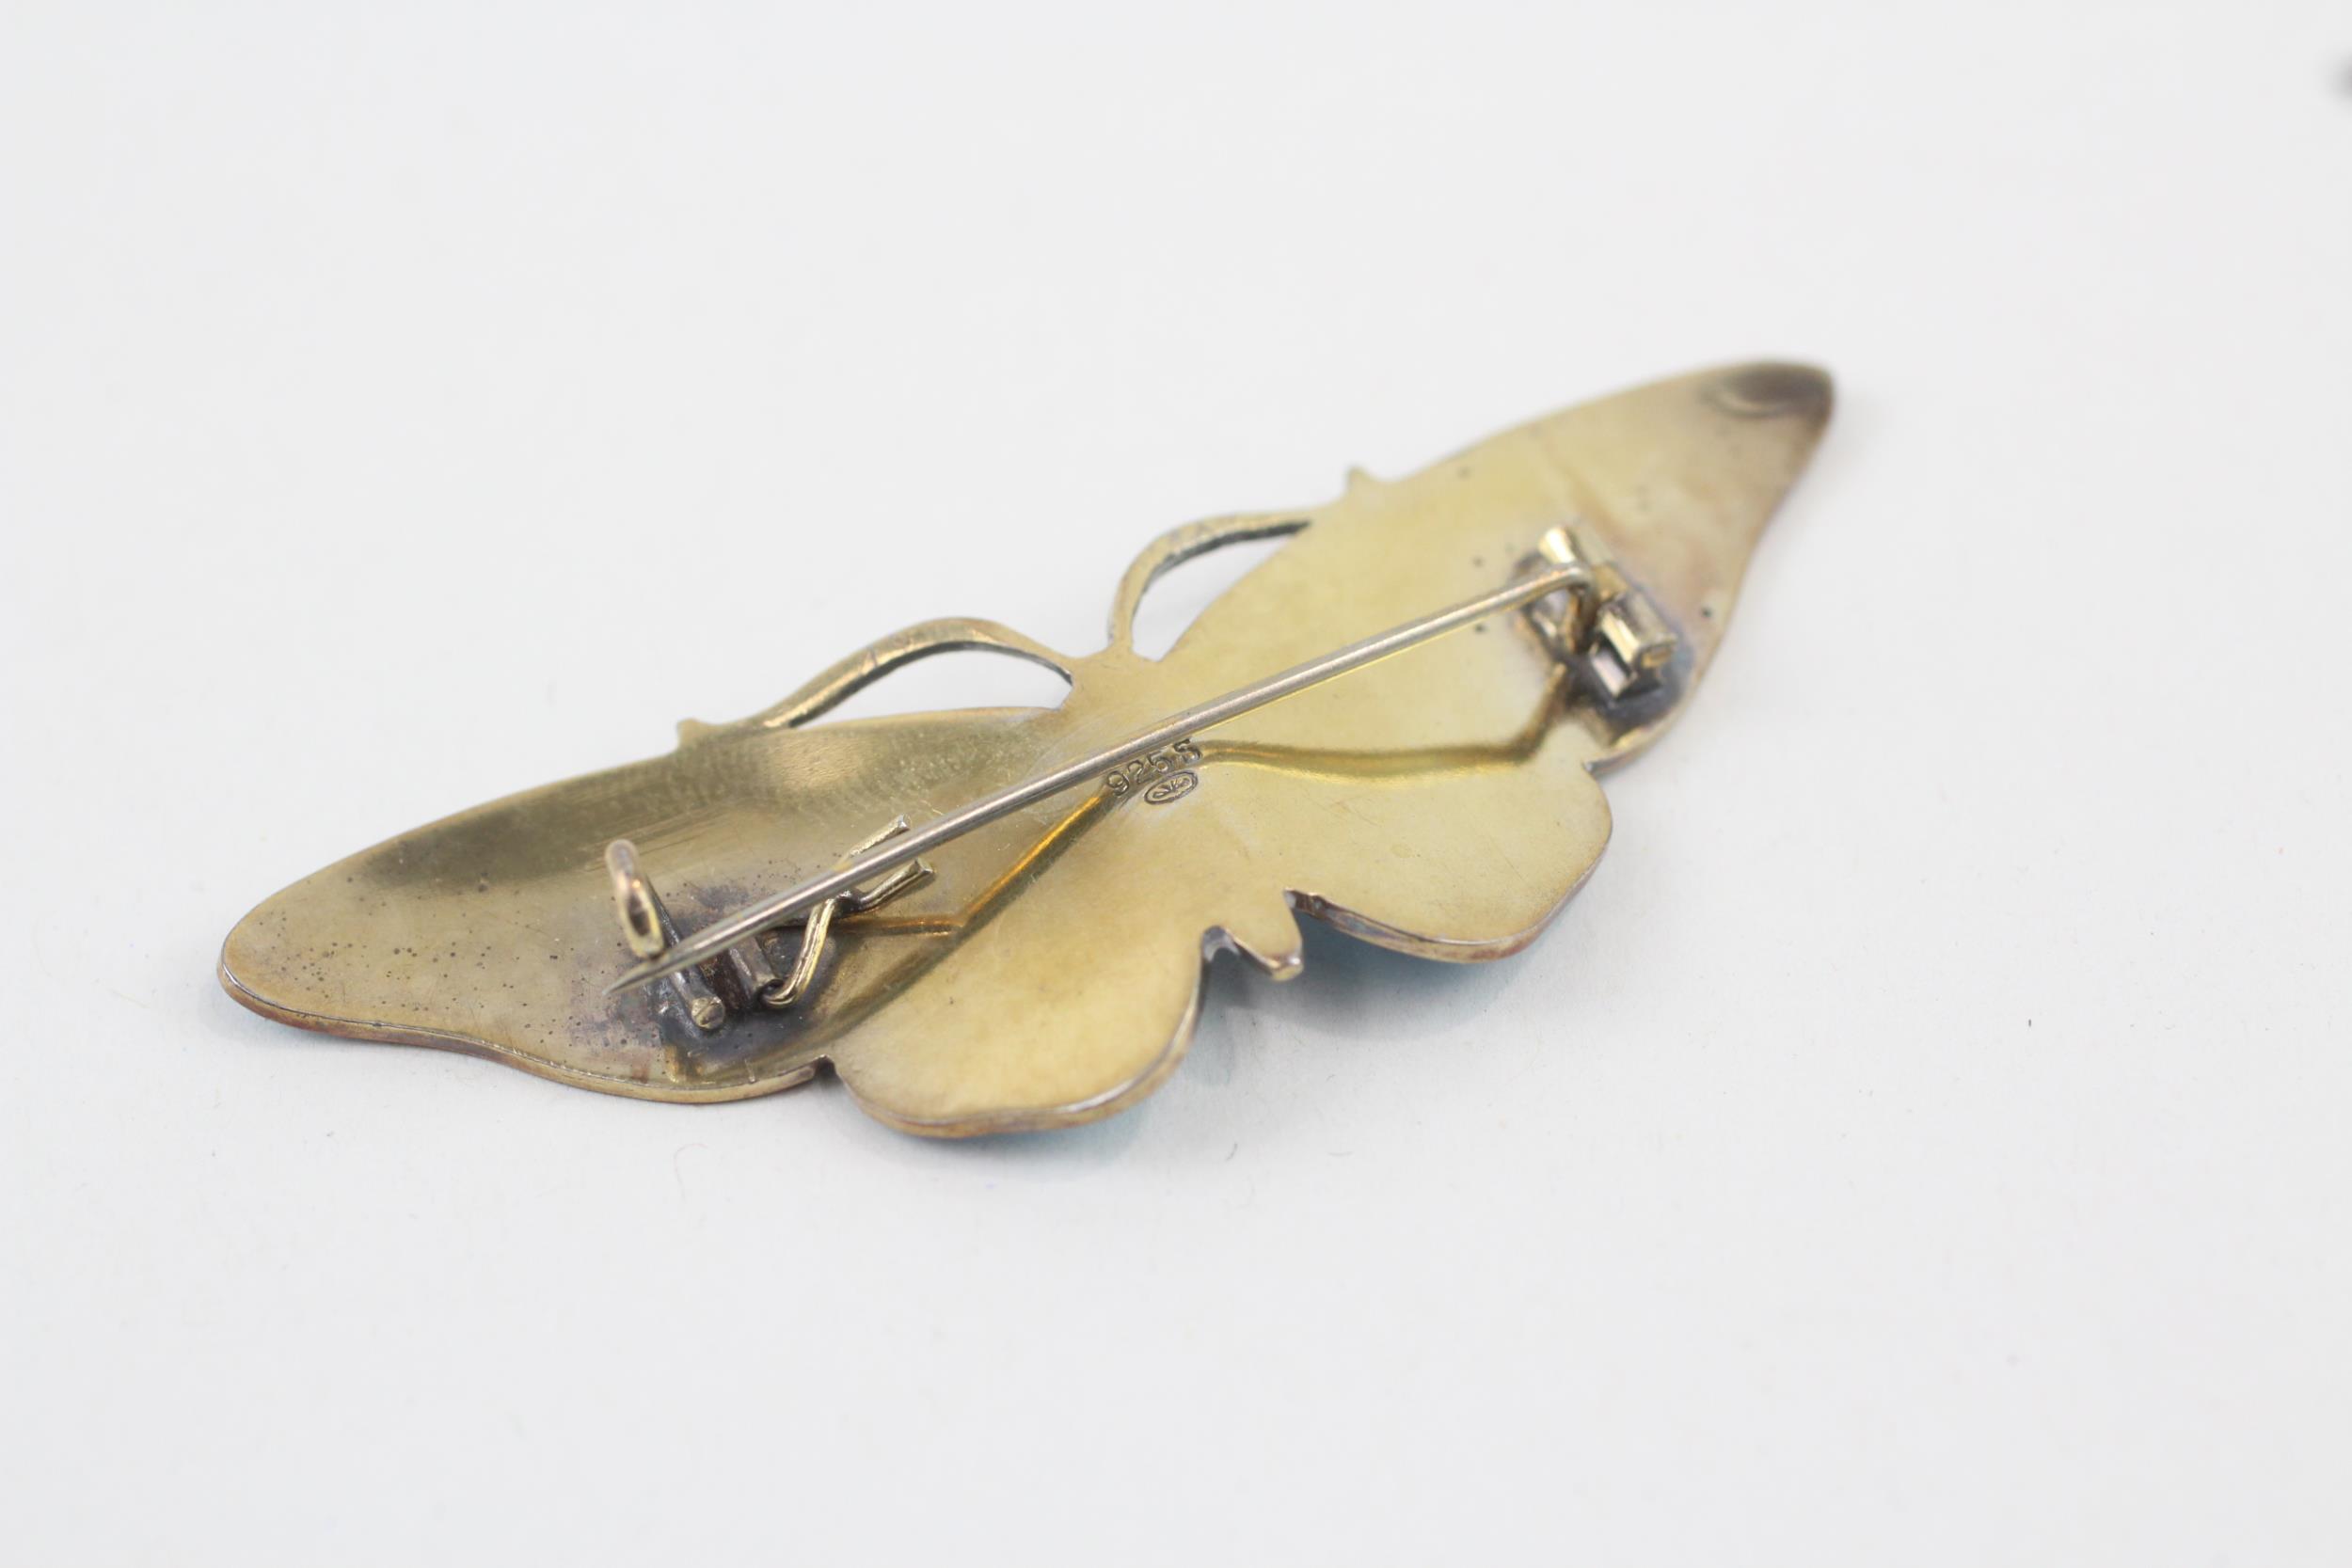 Silver enamel butterfly brooch by Gustav Hellstrom (13g) - Image 9 of 13